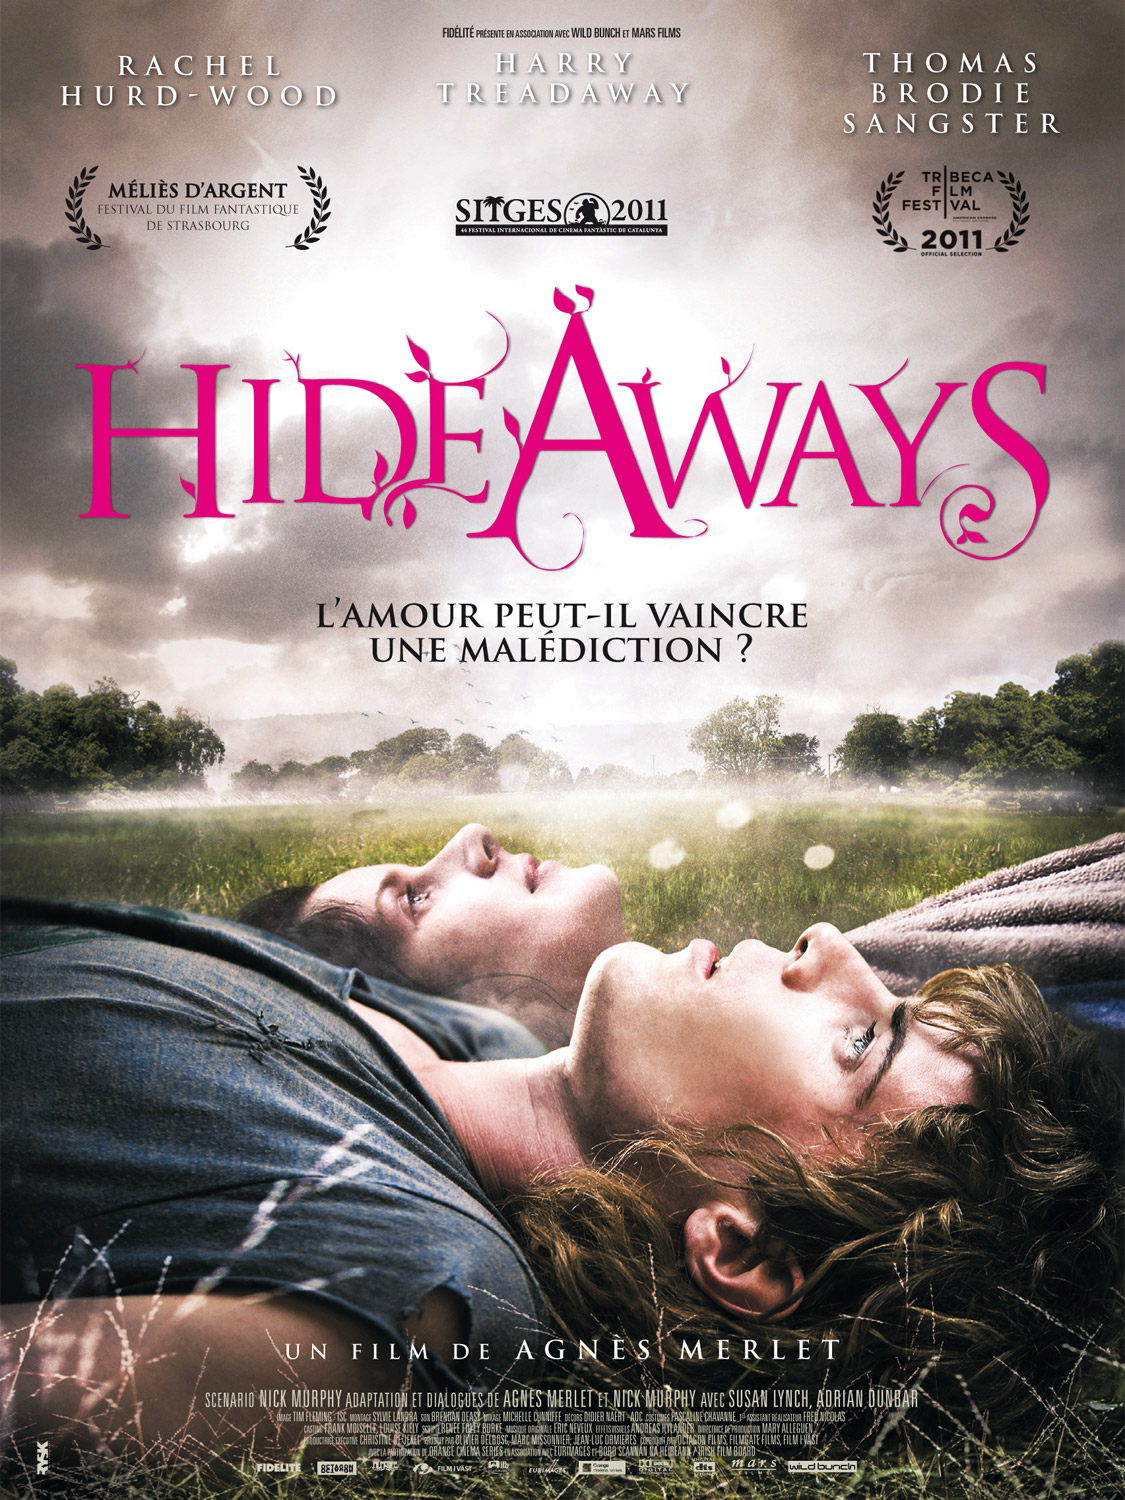 Hideaways 2011 movie nude scenes